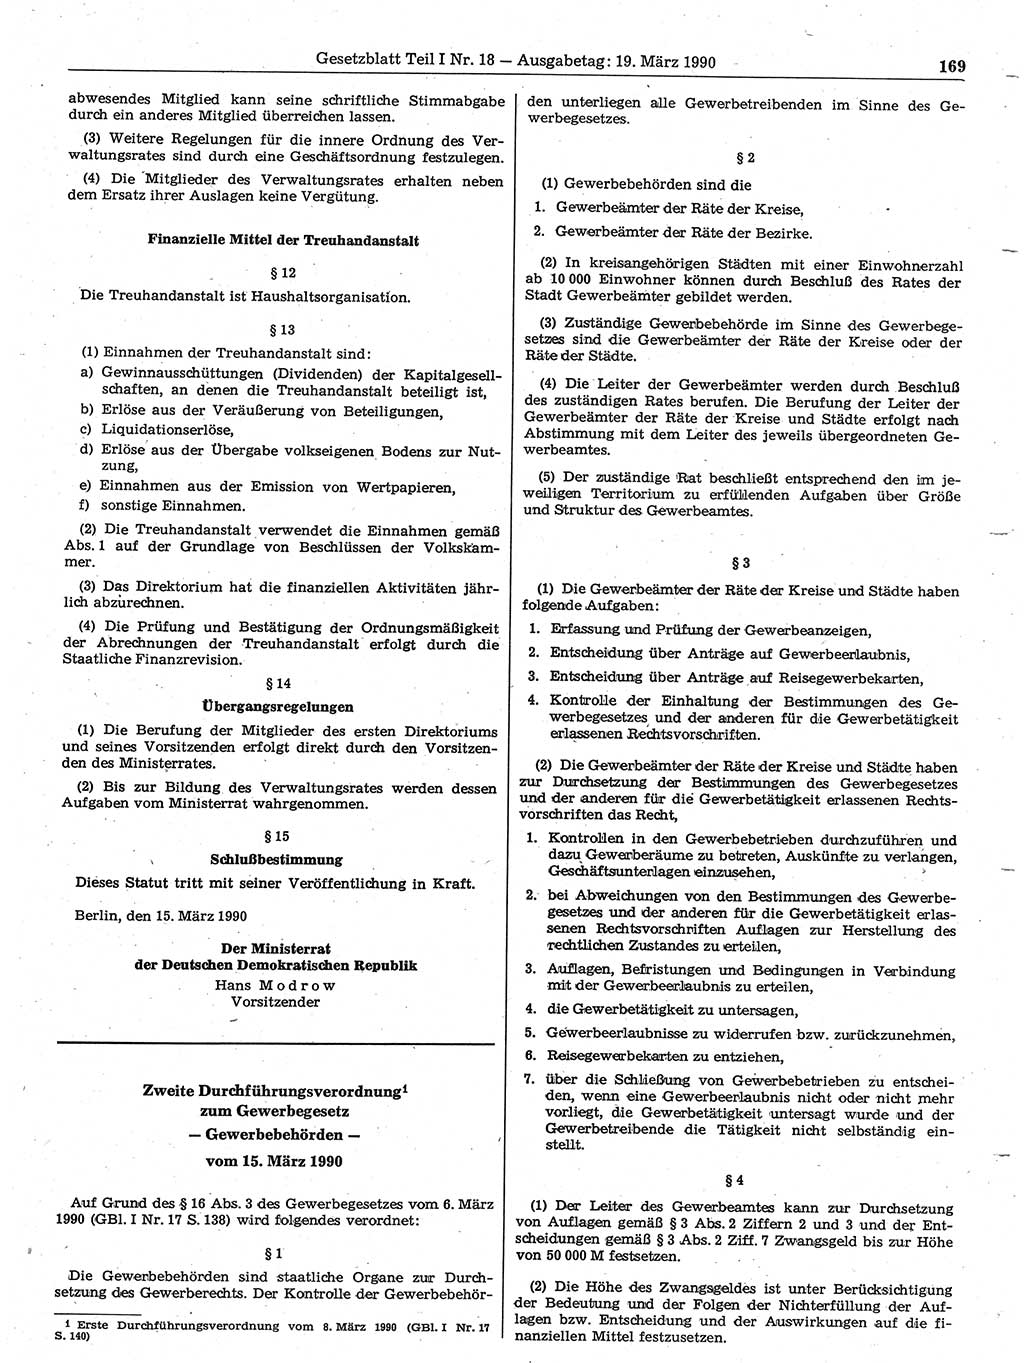 Gesetzblatt (GBl.) der Deutschen Demokratischen Republik (DDR) Teil Ⅰ 1990, Seite 169 (GBl. DDR Ⅰ 1990, S. 169)